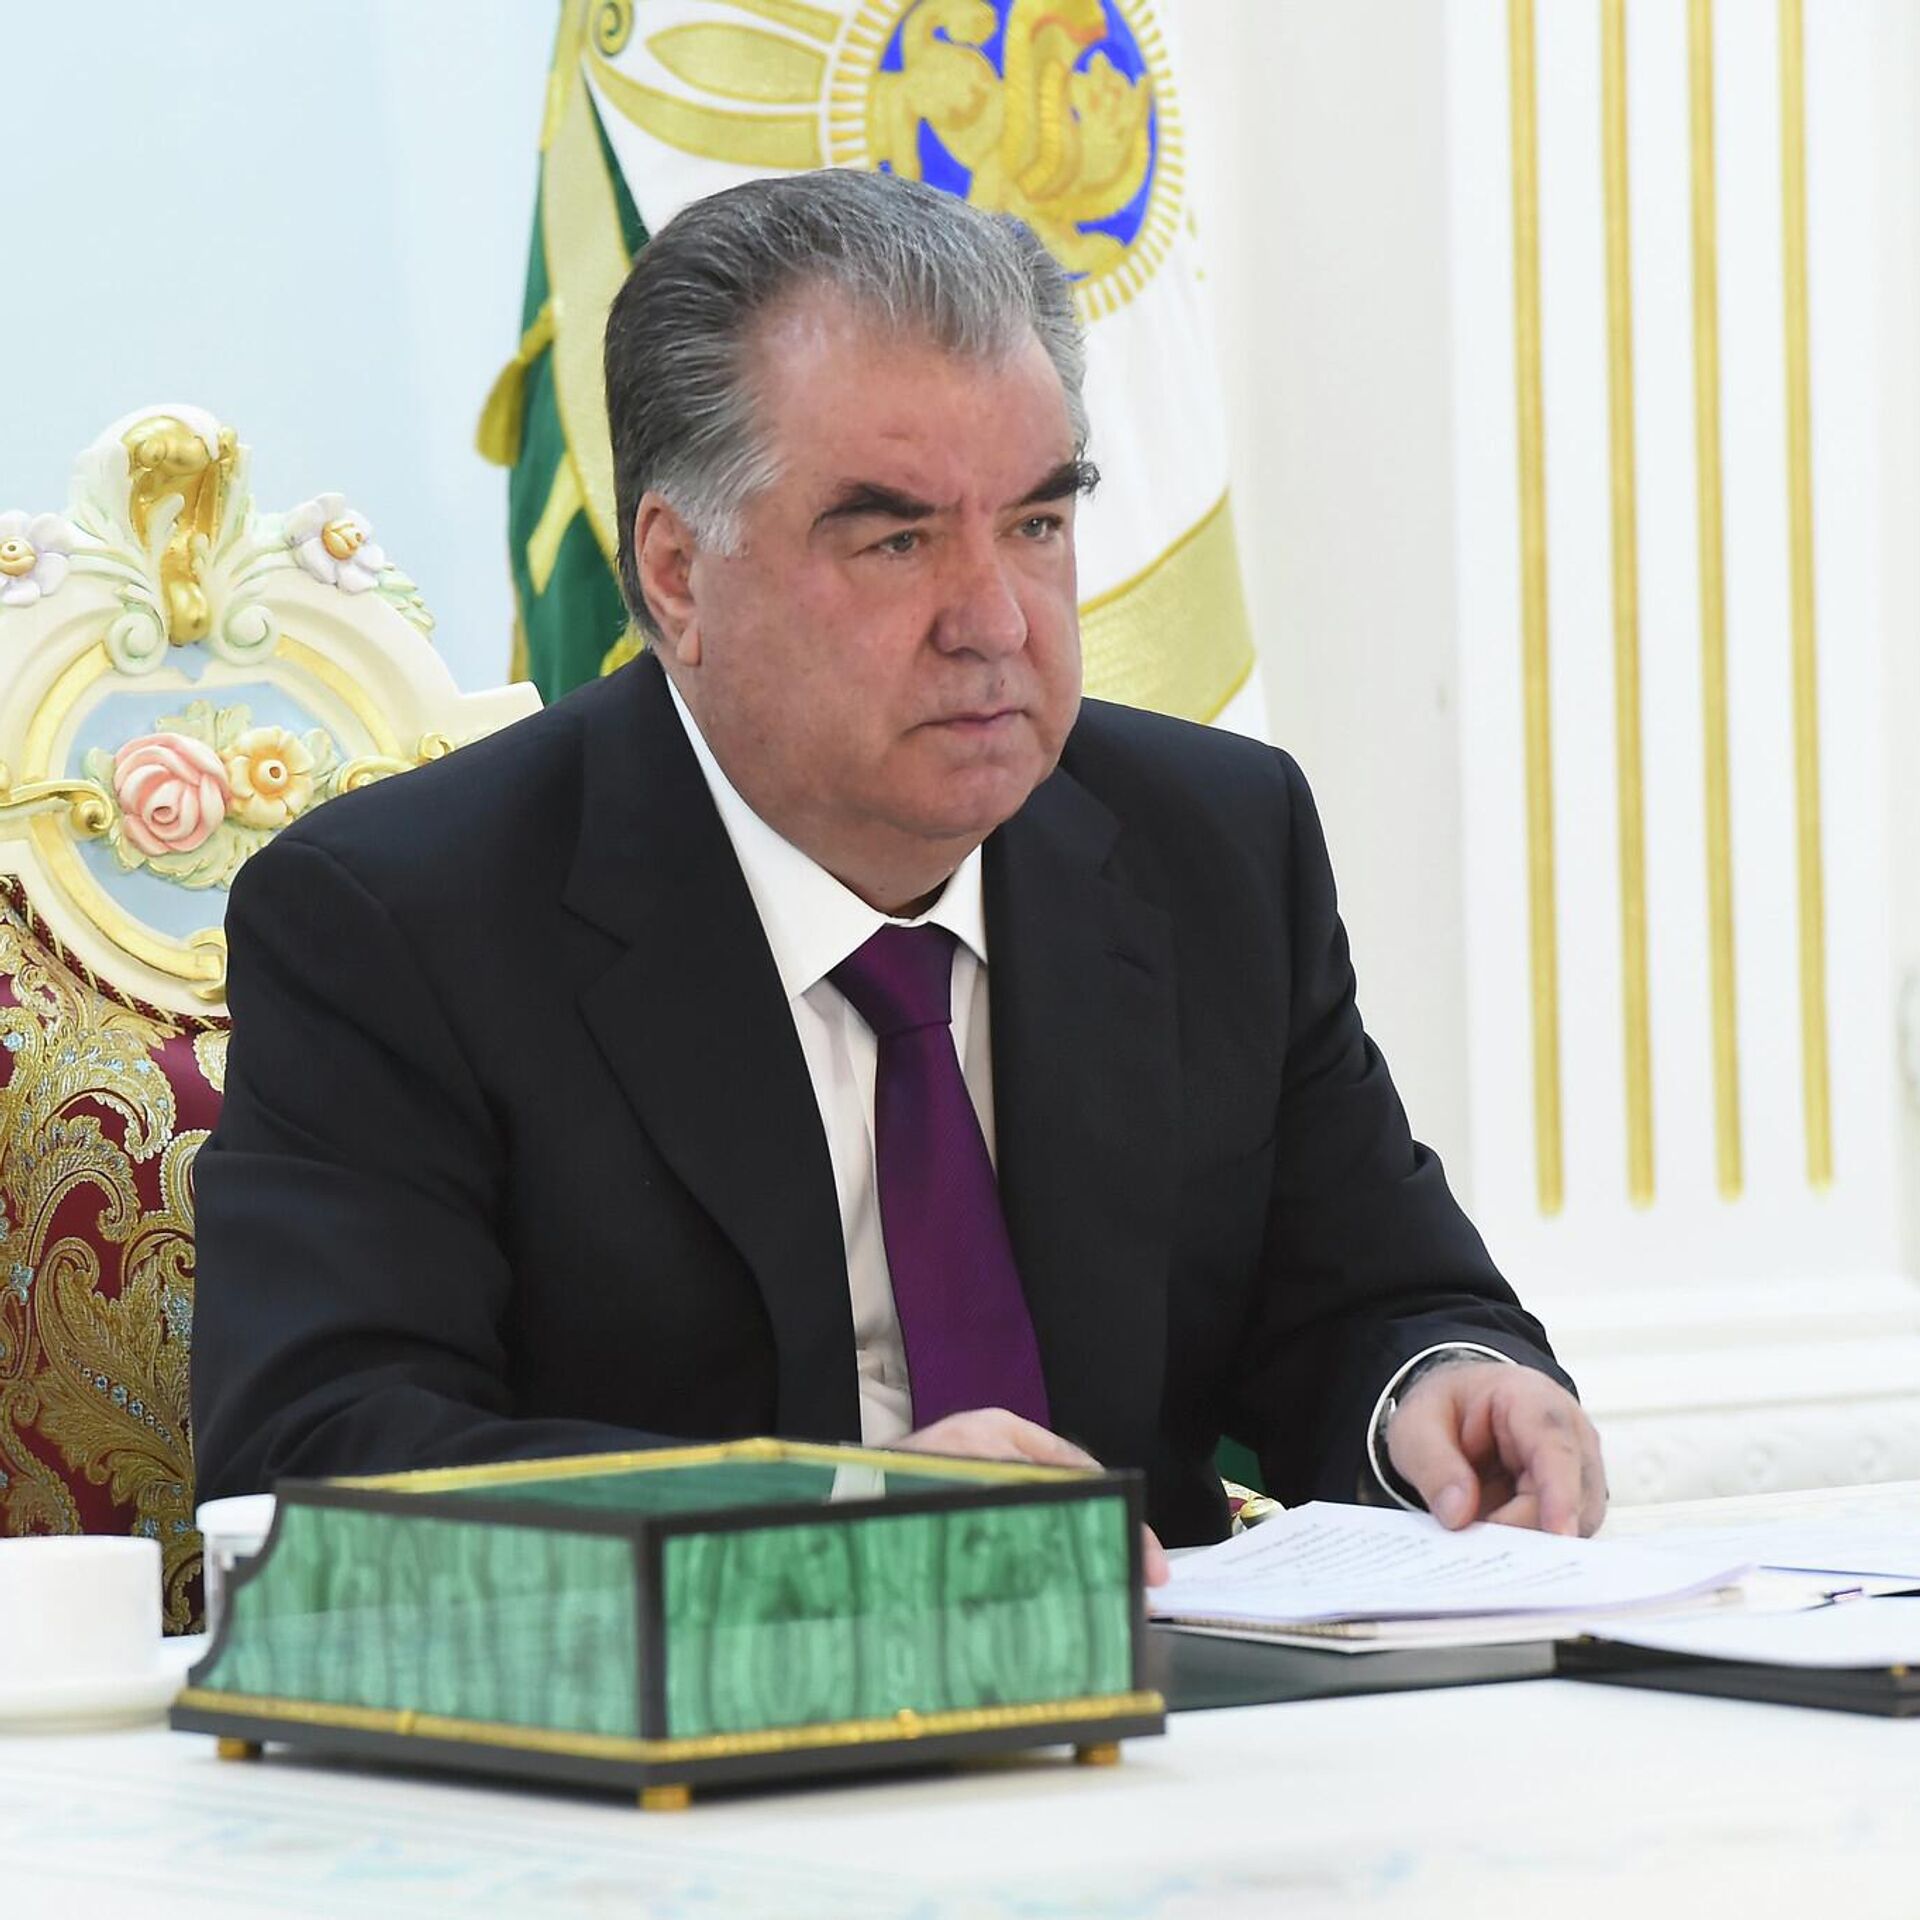 Заявление президента таджикистана. Лидер нации Эмомали Рахмон. Эмомали Рахмон 1992.